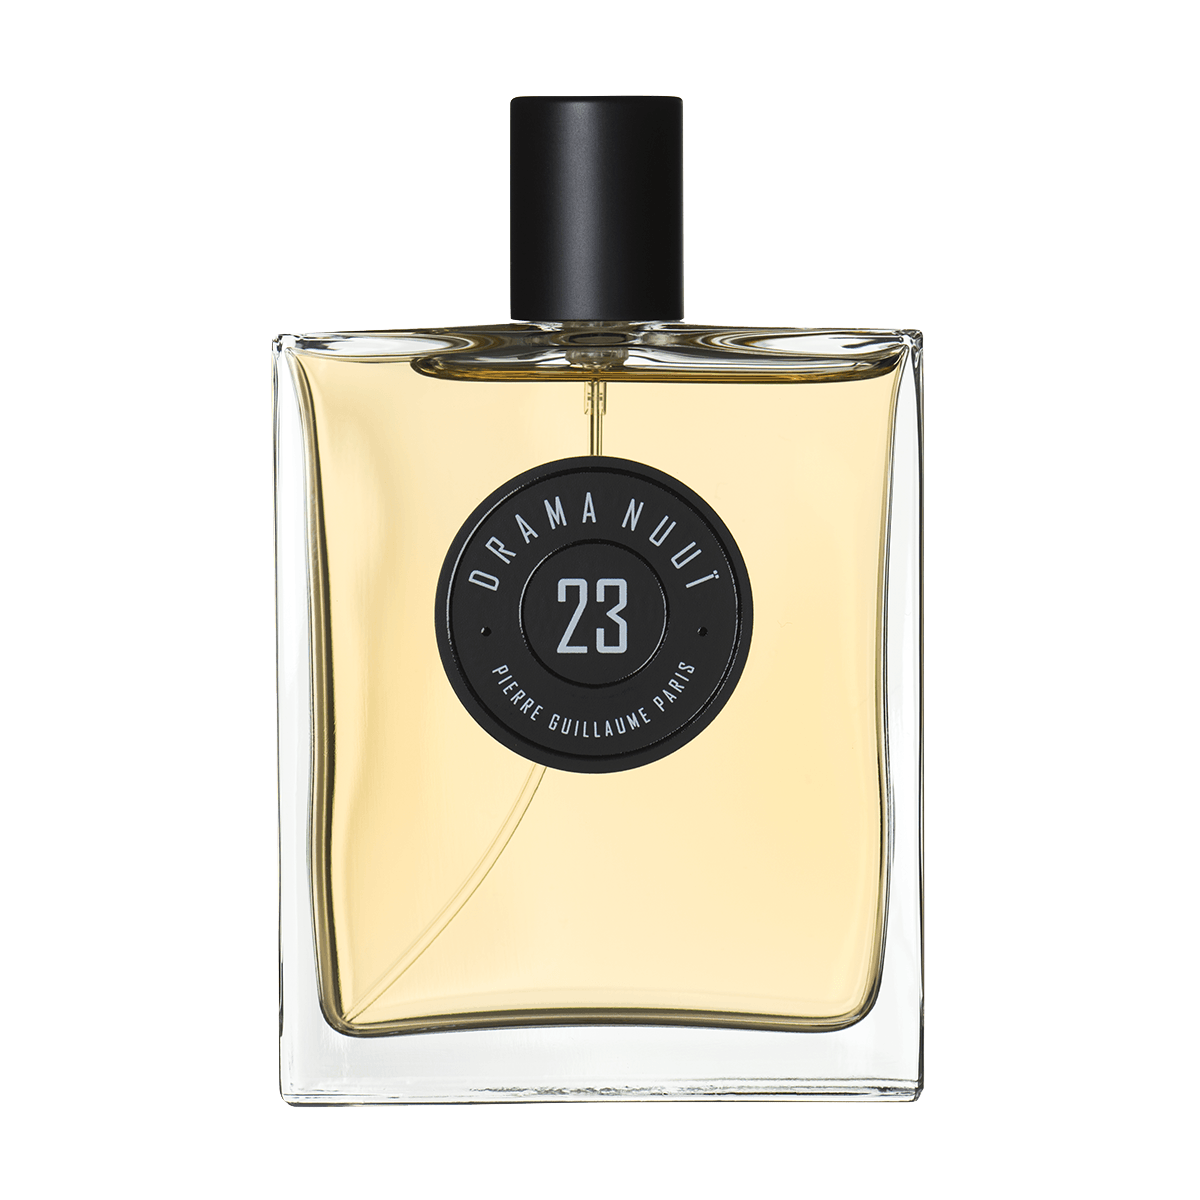 Pierre Guillaume Paris - 23 Drama Nuuie eau de parfum 100 ml | Perfume Lounge